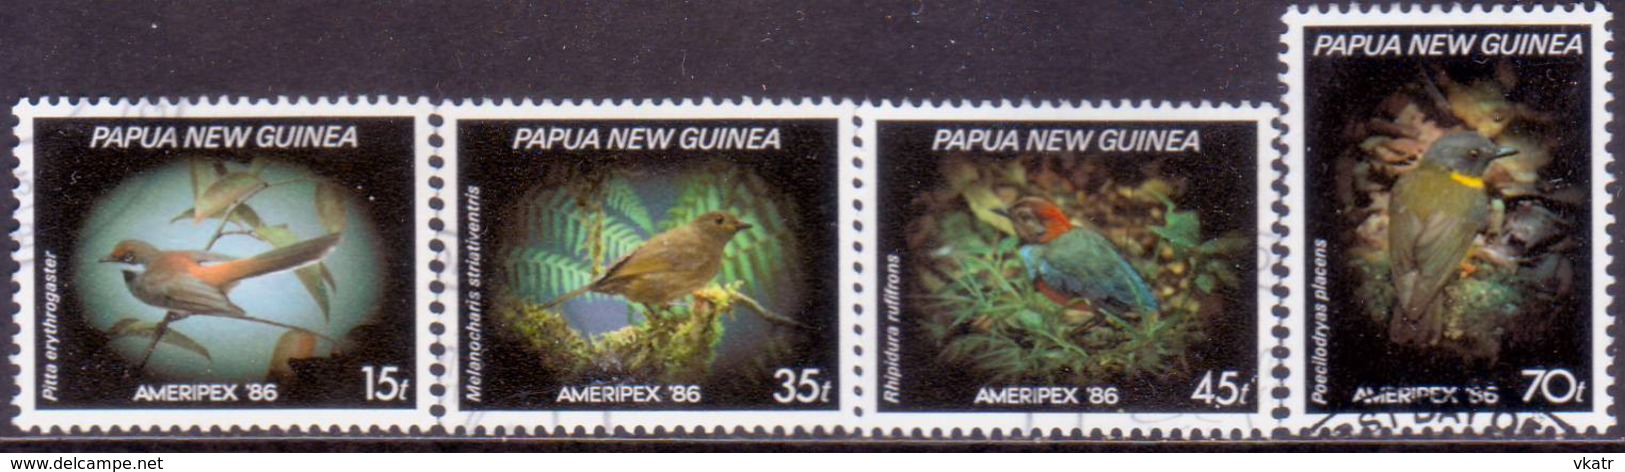 PAPUA NEW GUINEA 1986 SG #525-28 Compl.set Used Ameripex '86 - Papua New Guinea